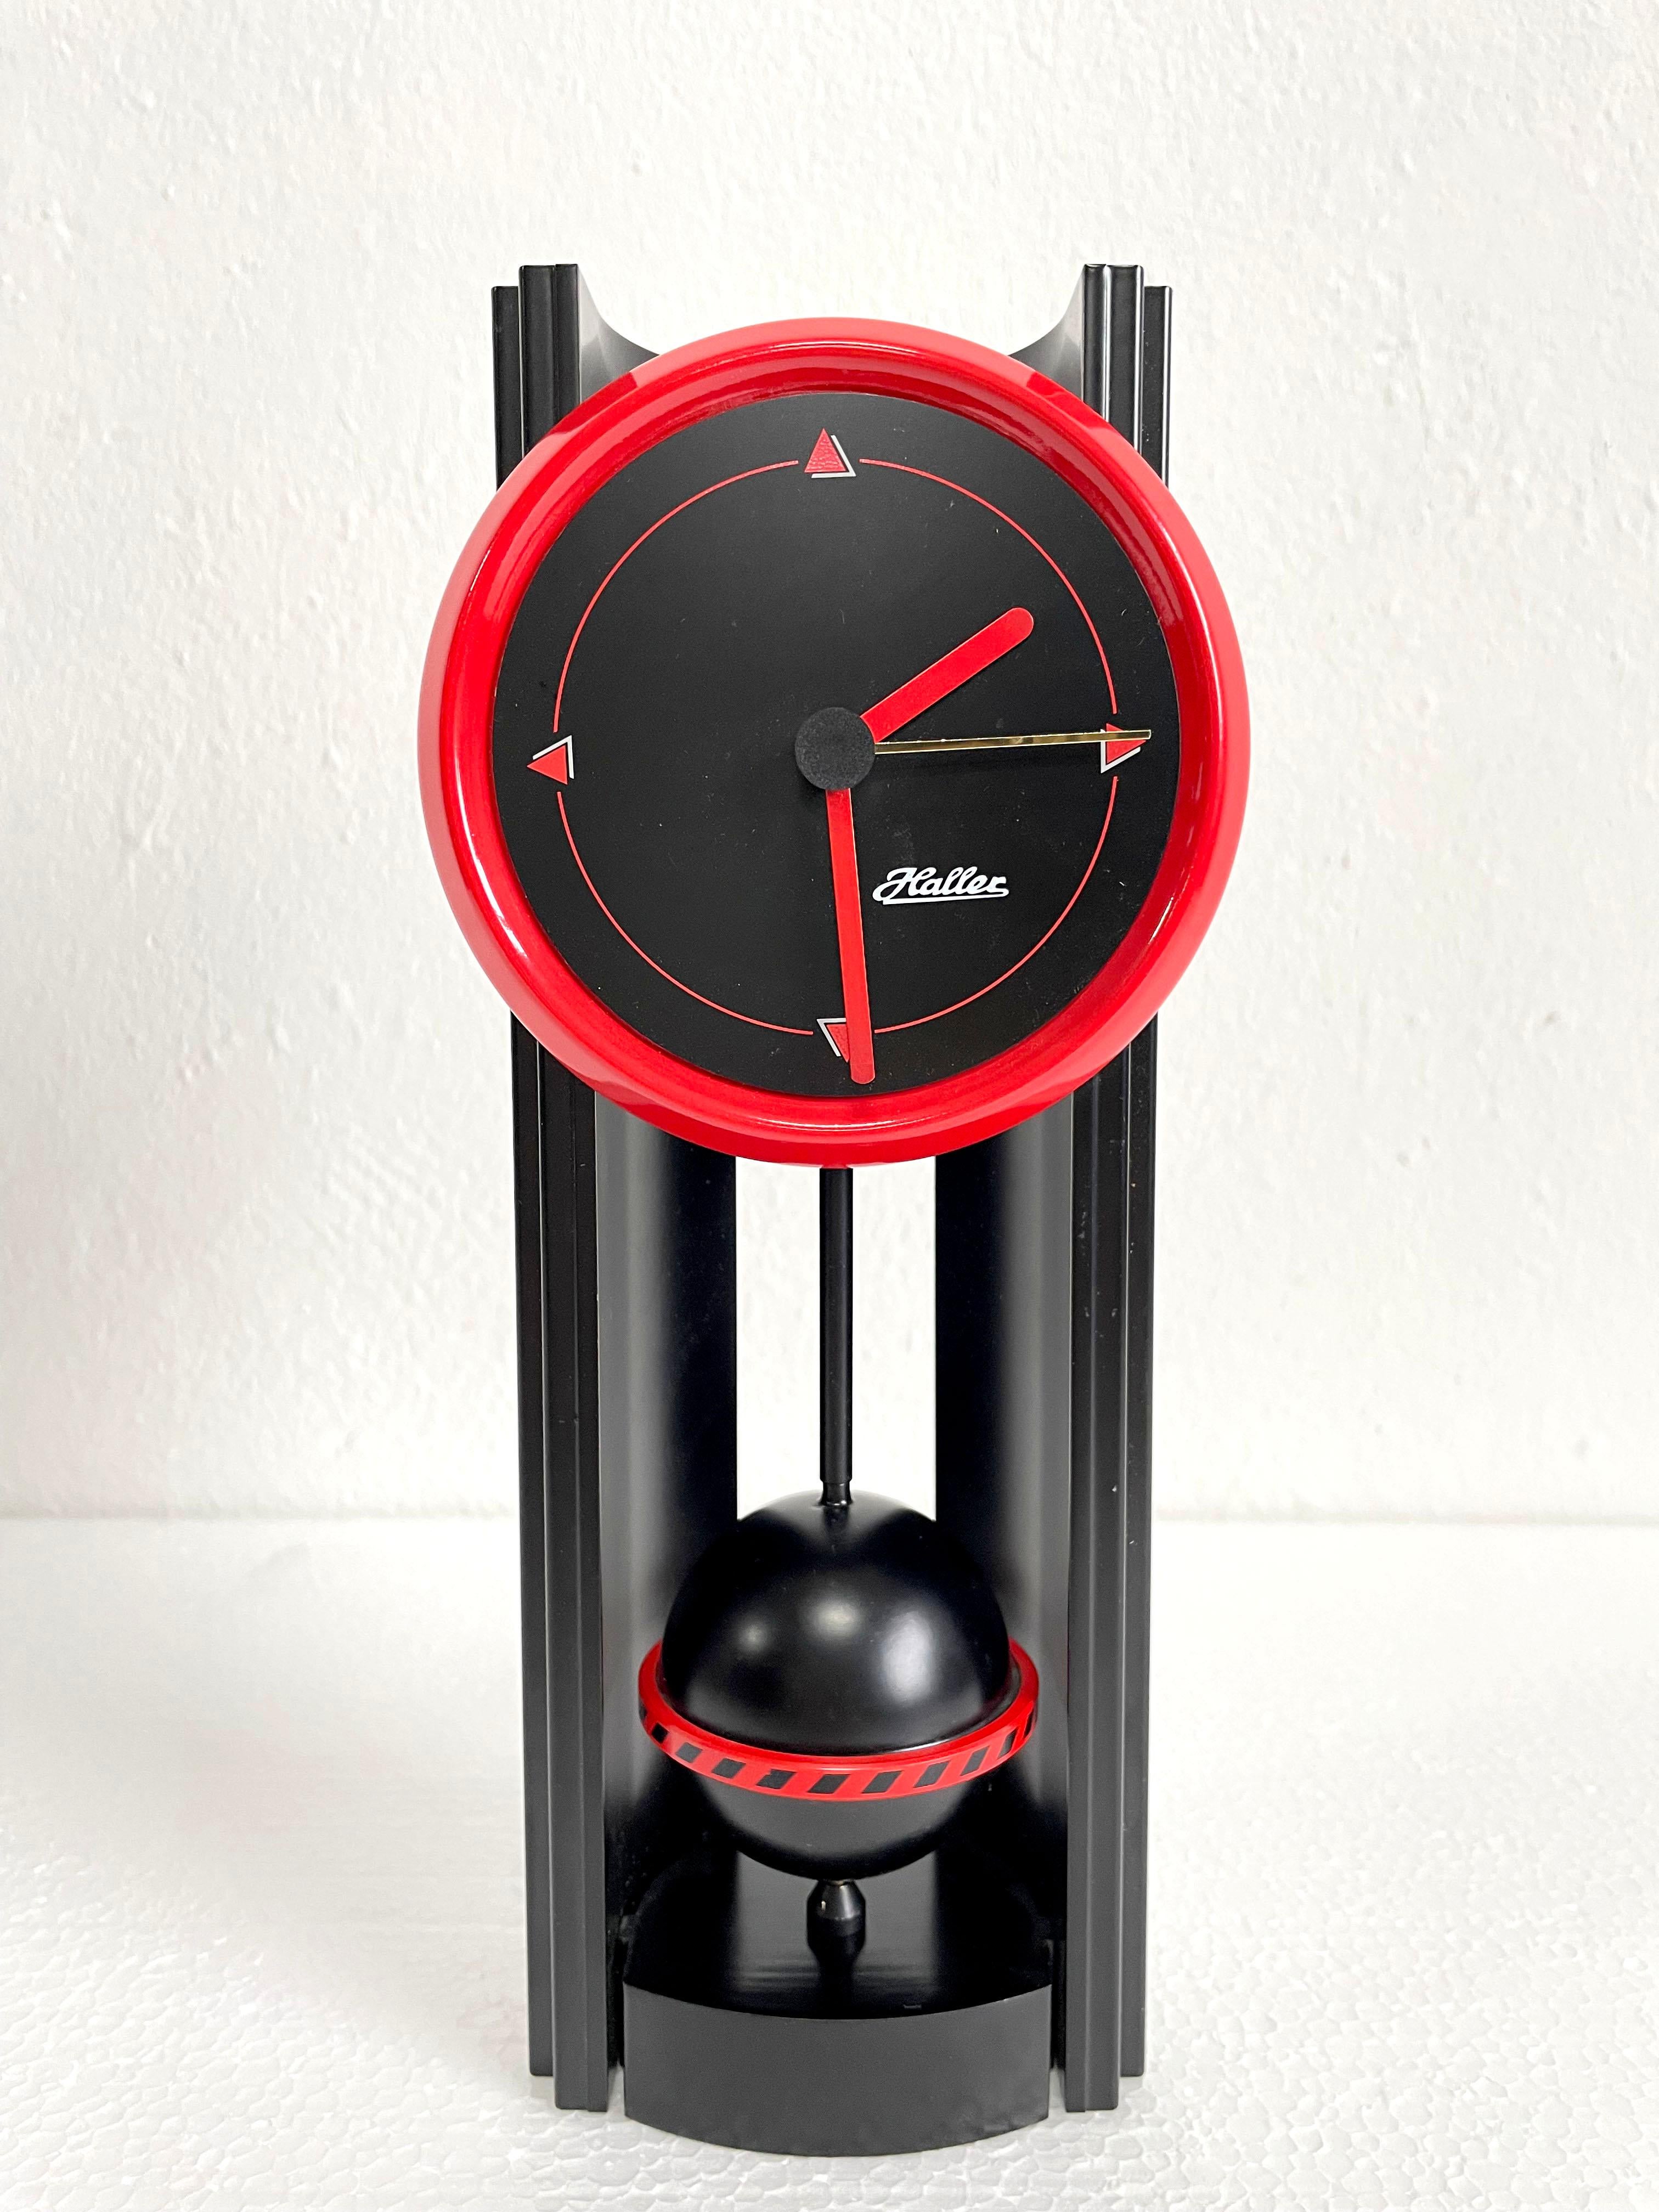 Seltene Tischuhr im Memphis-Stil, hergestellt in den 1980er Jahren in Deutschland von Haller Clocks.

Die Uhr ist aus schwarzem und rotem Kunststoff gefertigt und hat einen batteriebetriebenen Mechanismus für eine Batterie des Typs AA. Es ist in